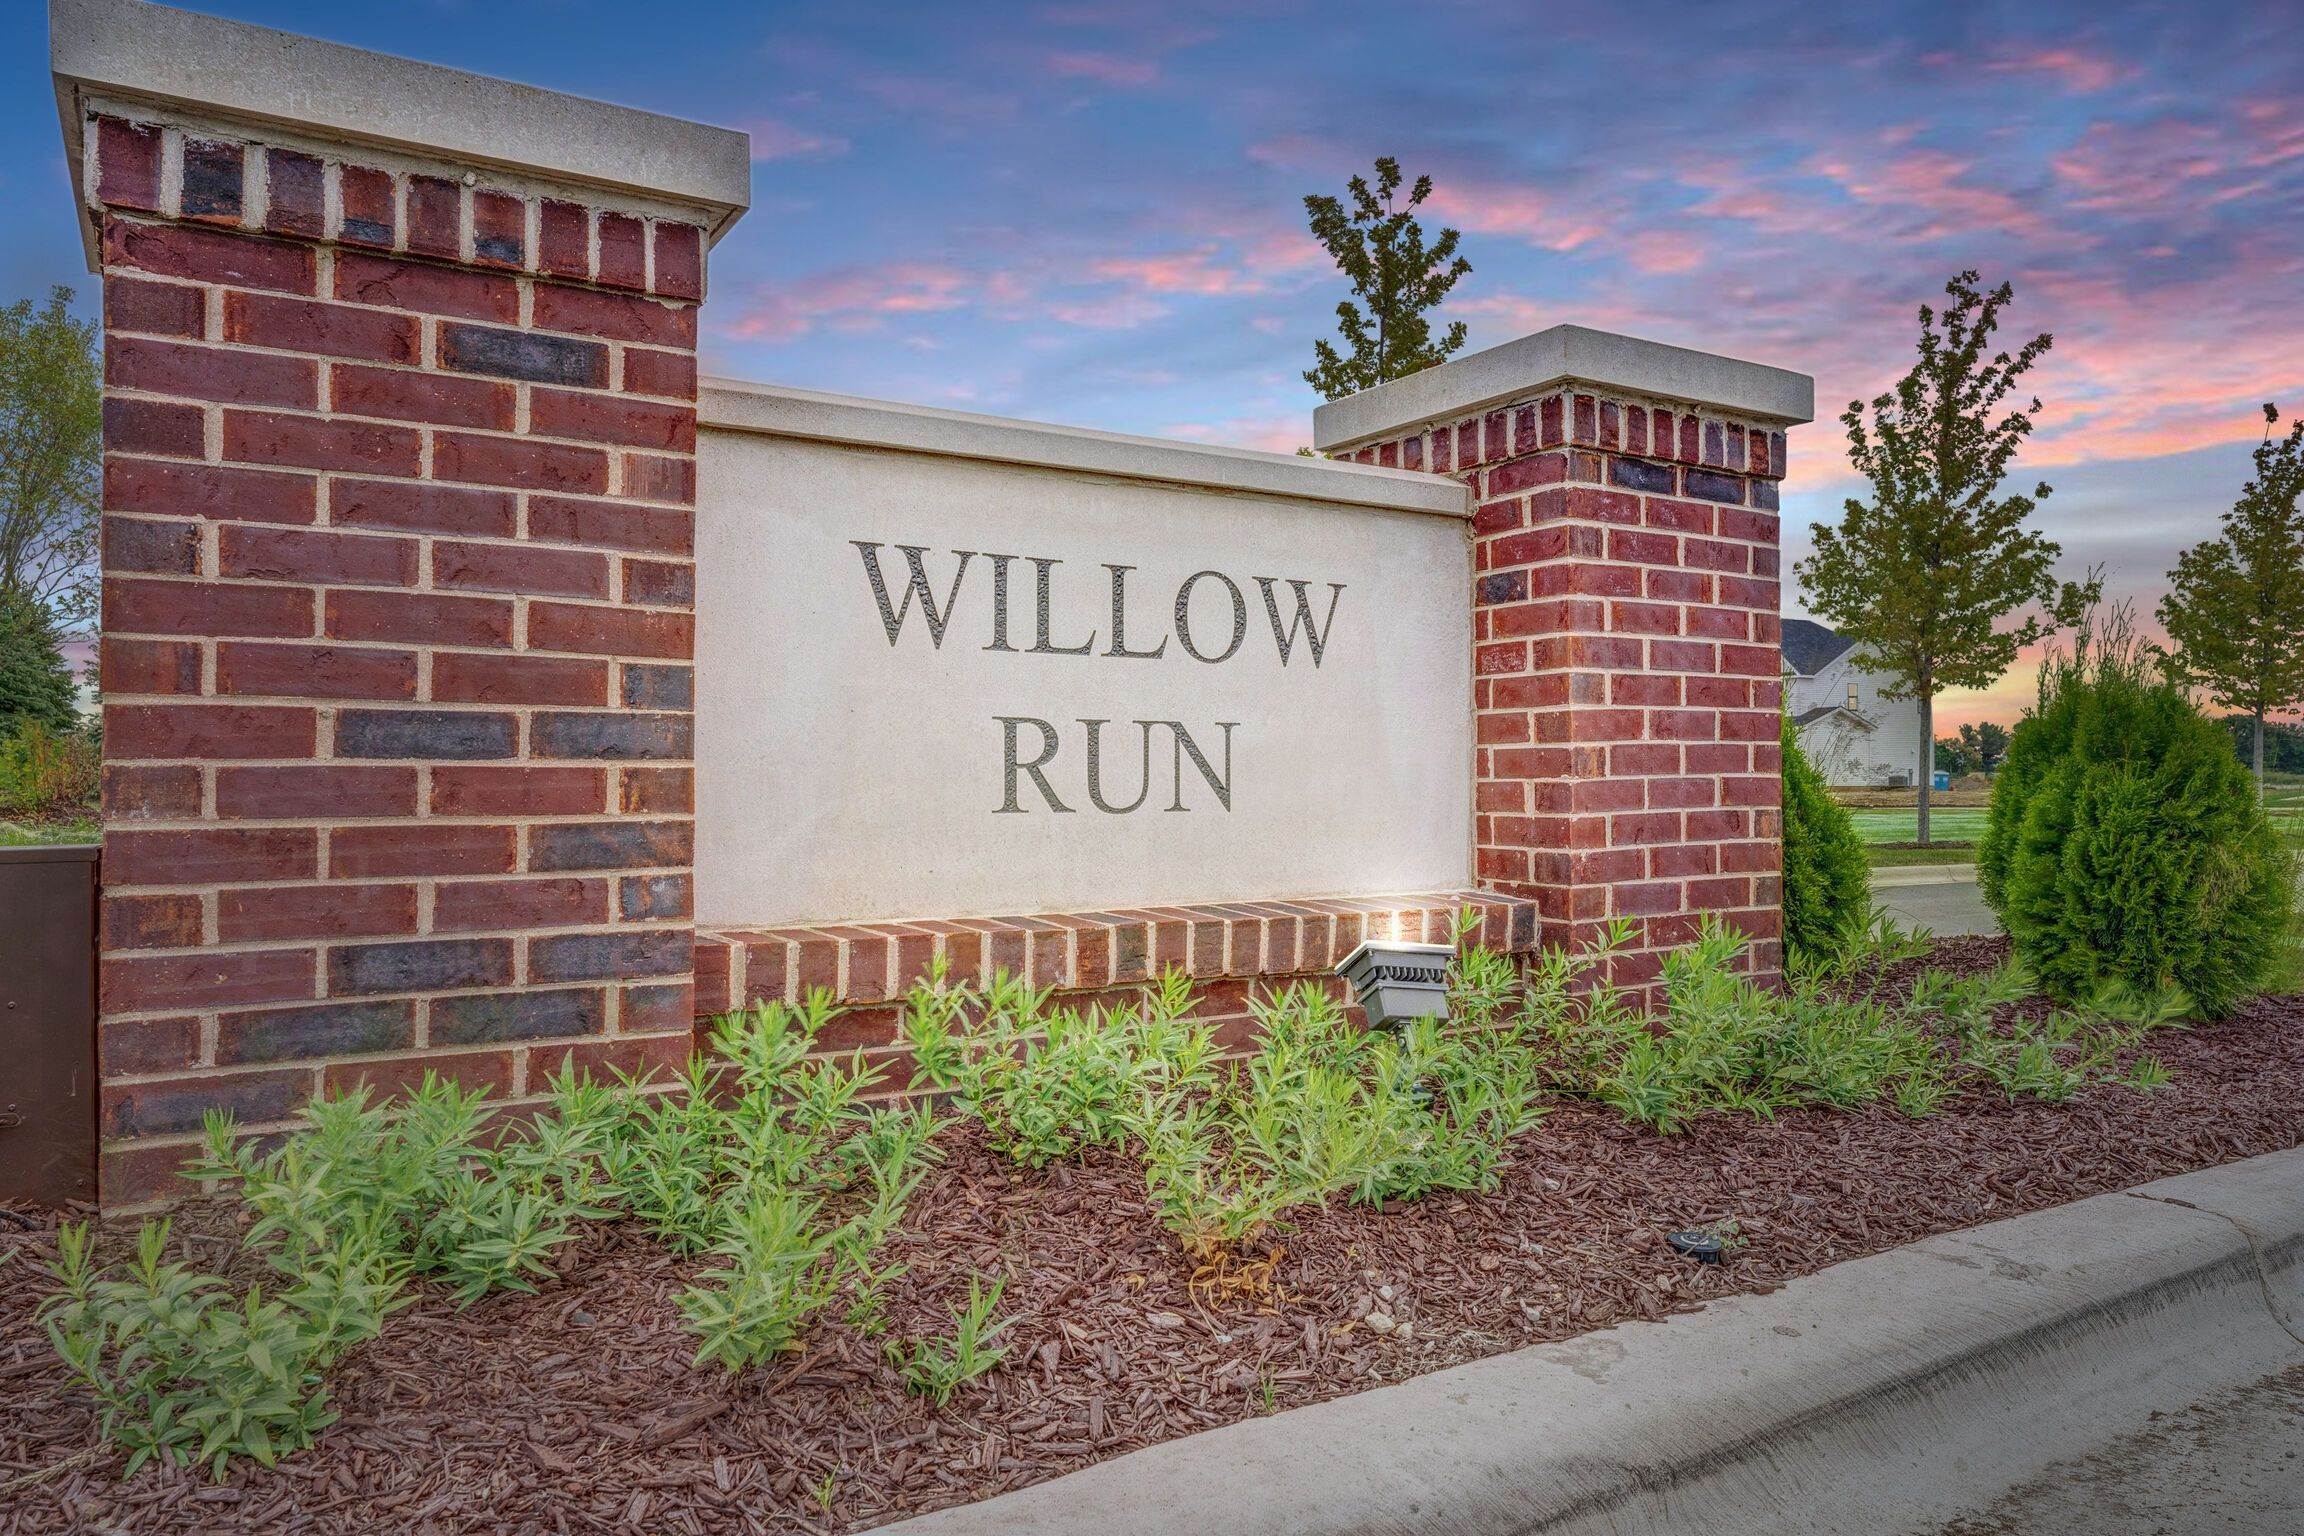 10. Willow Run κτίριο σε 15262 S. Sawgrass Circle, Plainfield, IL 60544